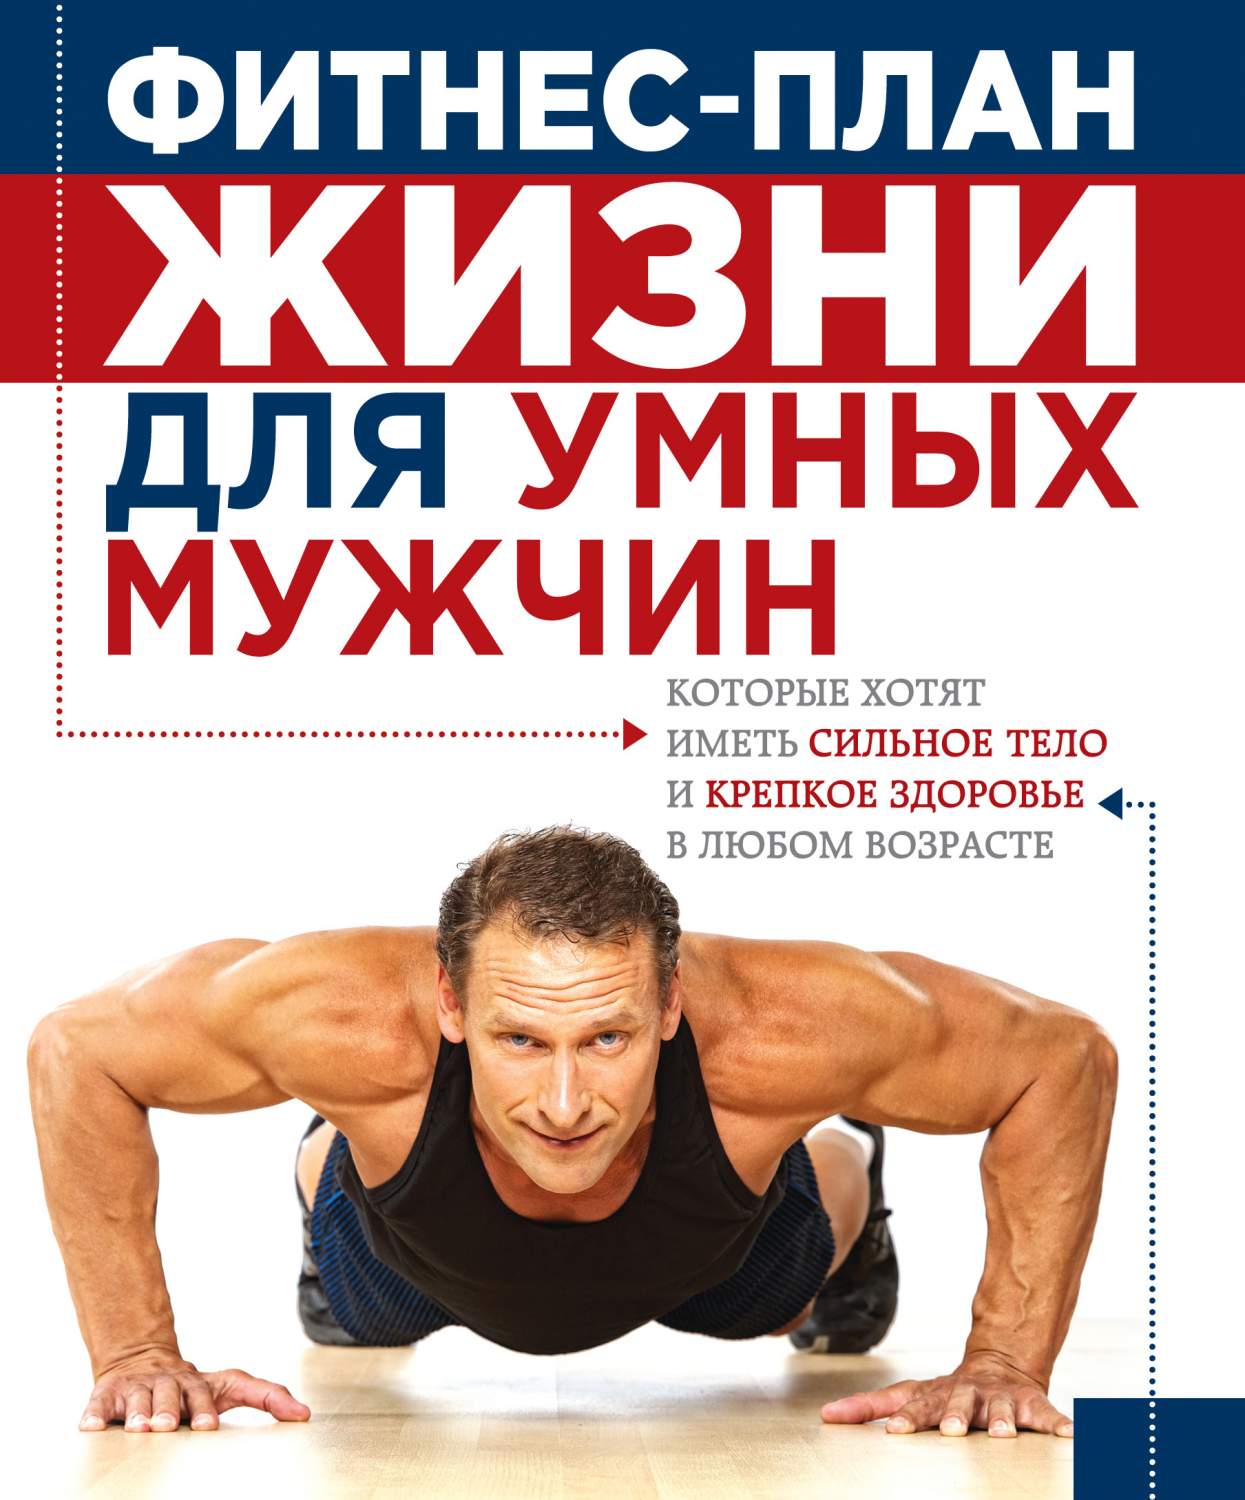 Книга Фитнес-план жизни для умных мужчин - купить спорта, красоты и здоровья в интернет-магазинах, цены в Москве на Мегамаркет